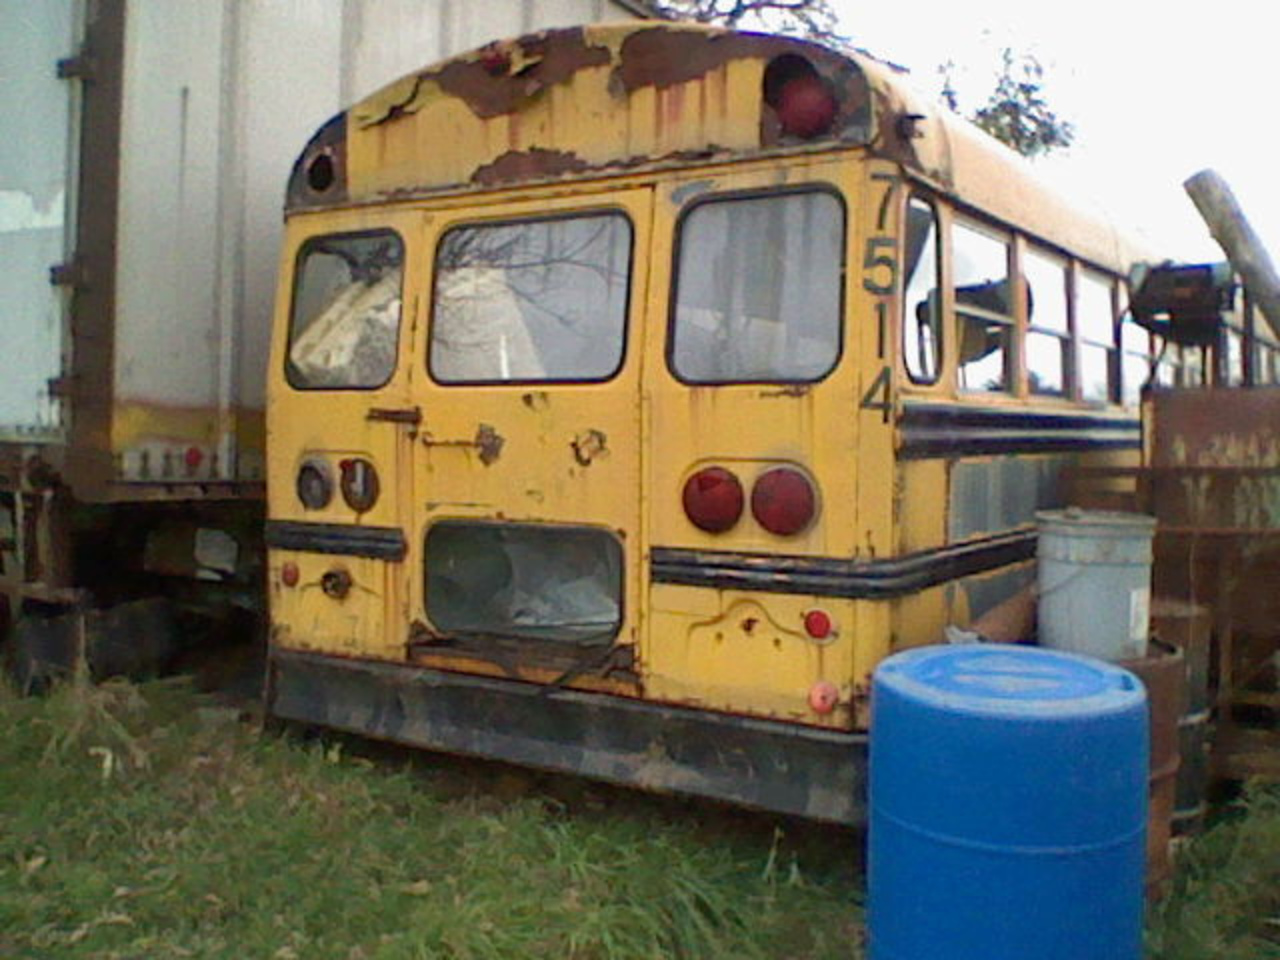 1975 Thomas international Loadstar 1700 school bus | Flickr ...